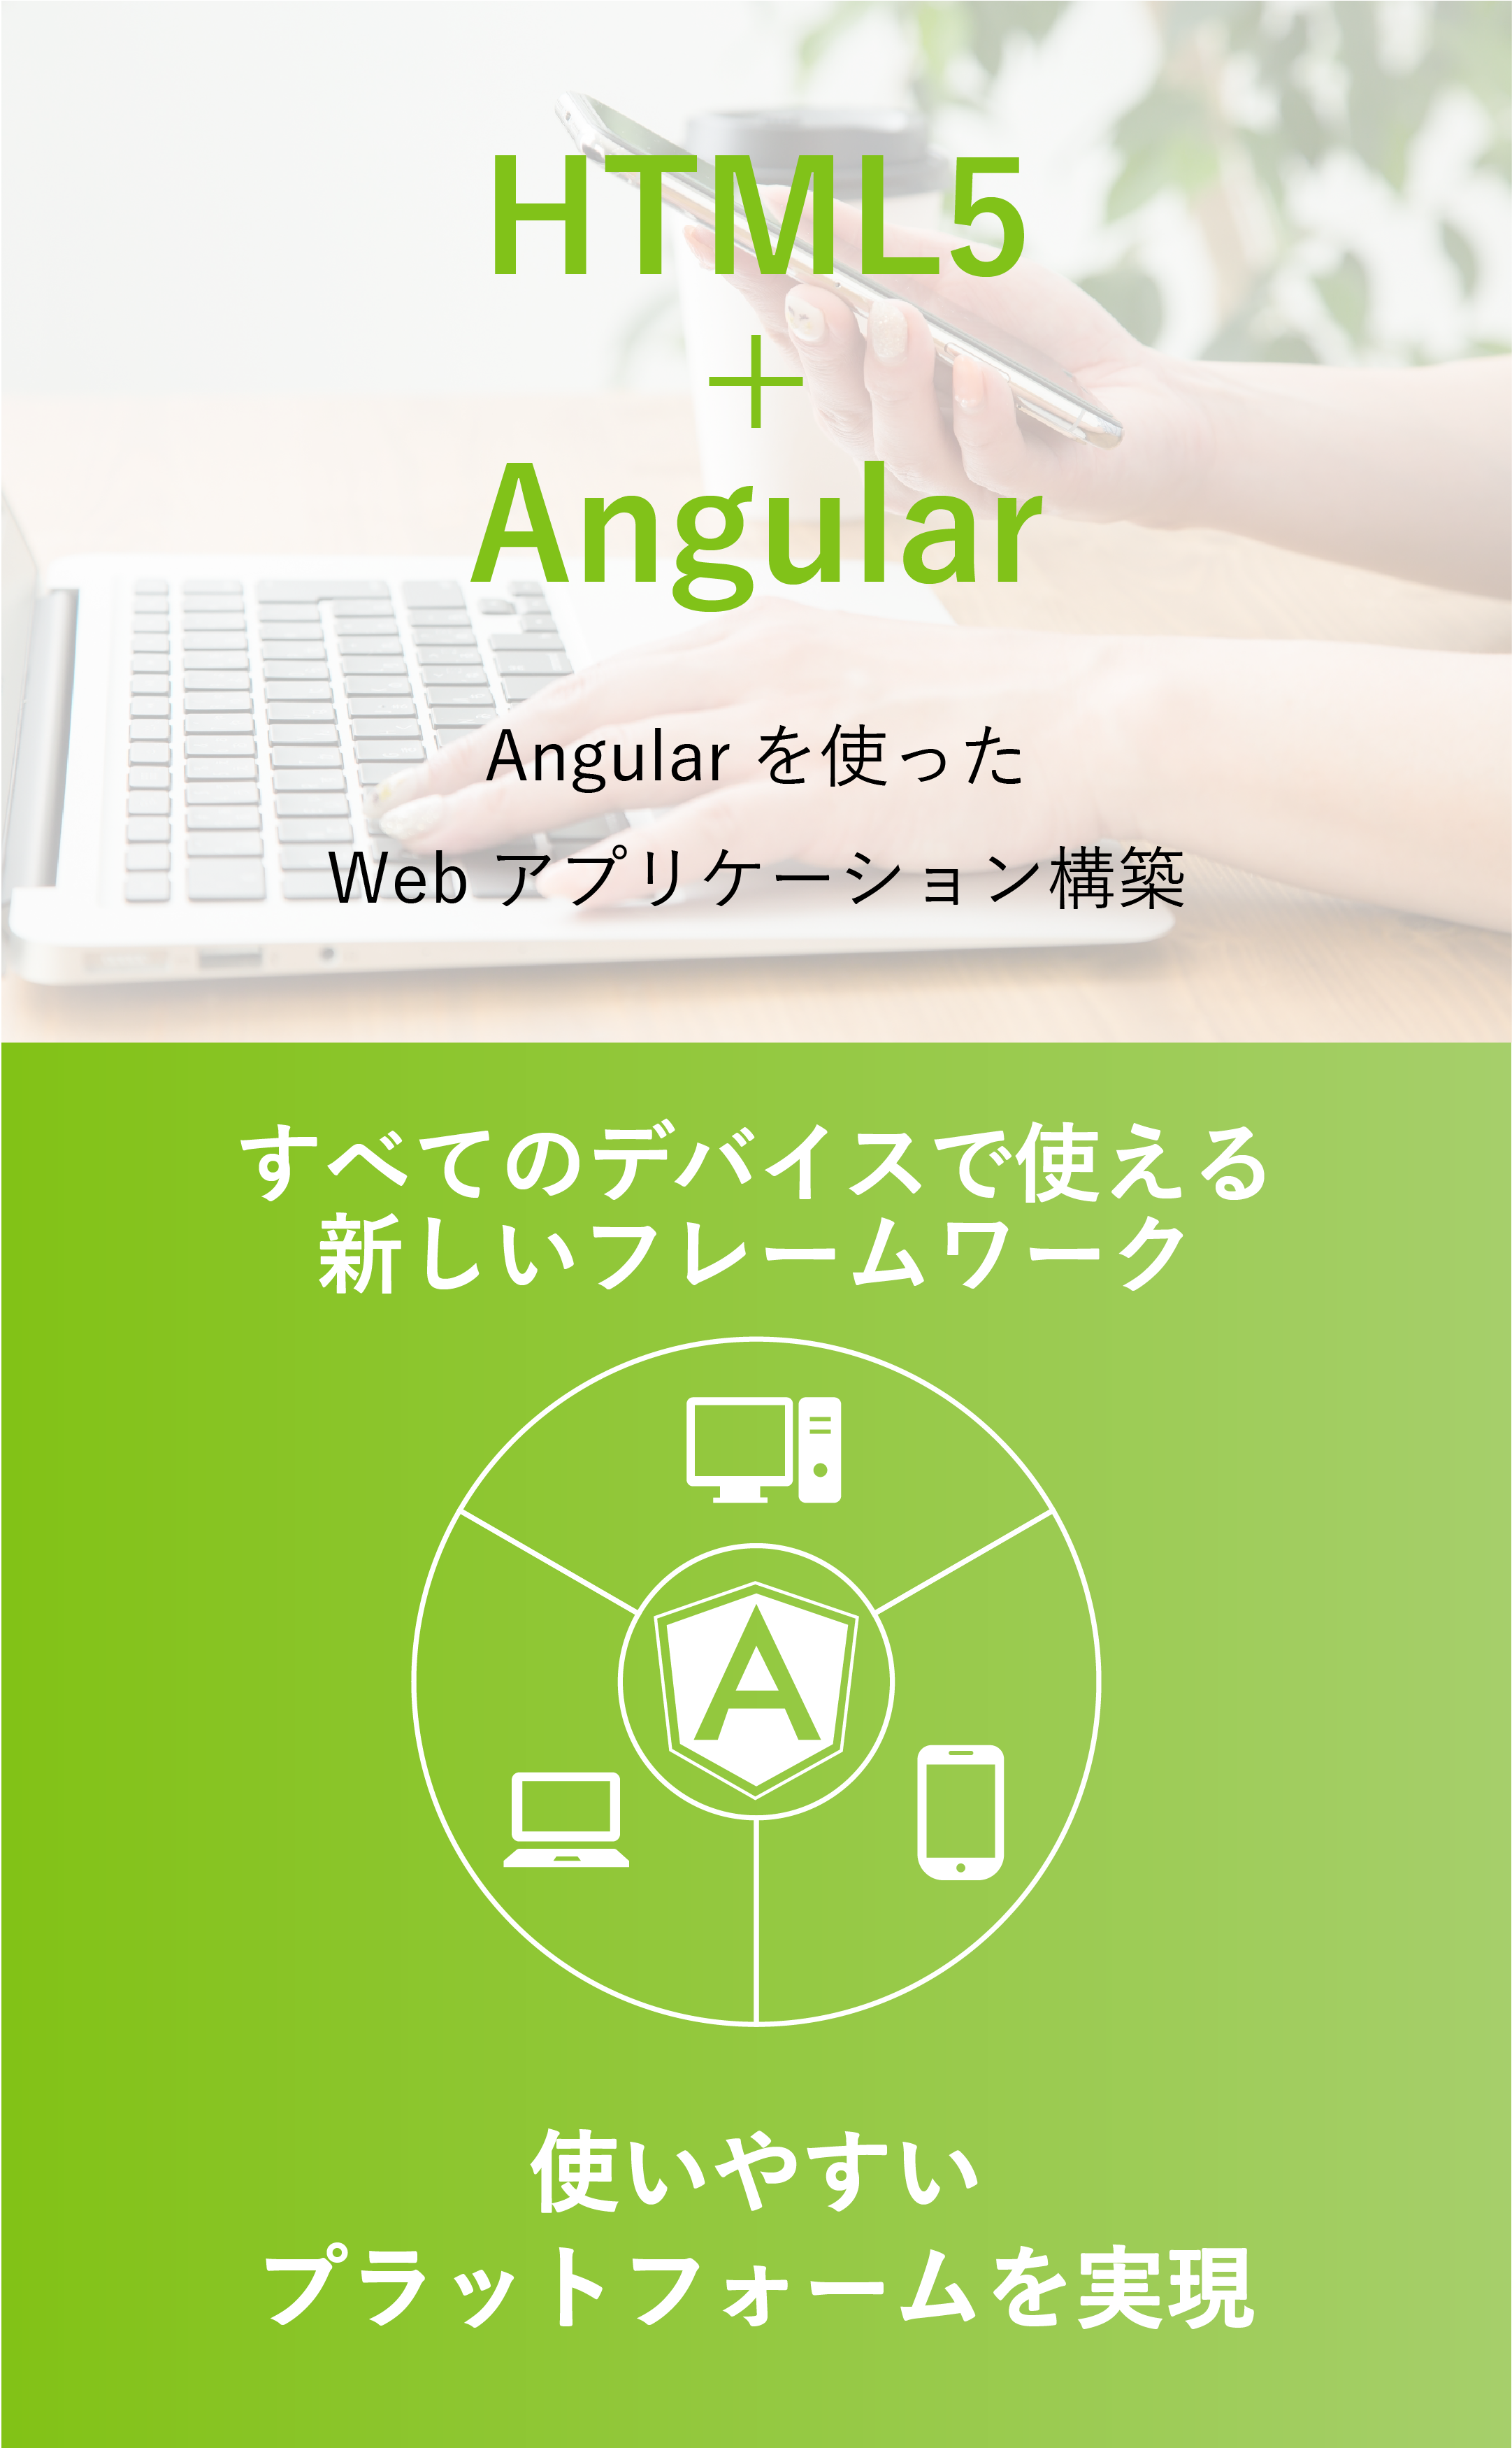 Angularを使ったWebアプリケーション構築